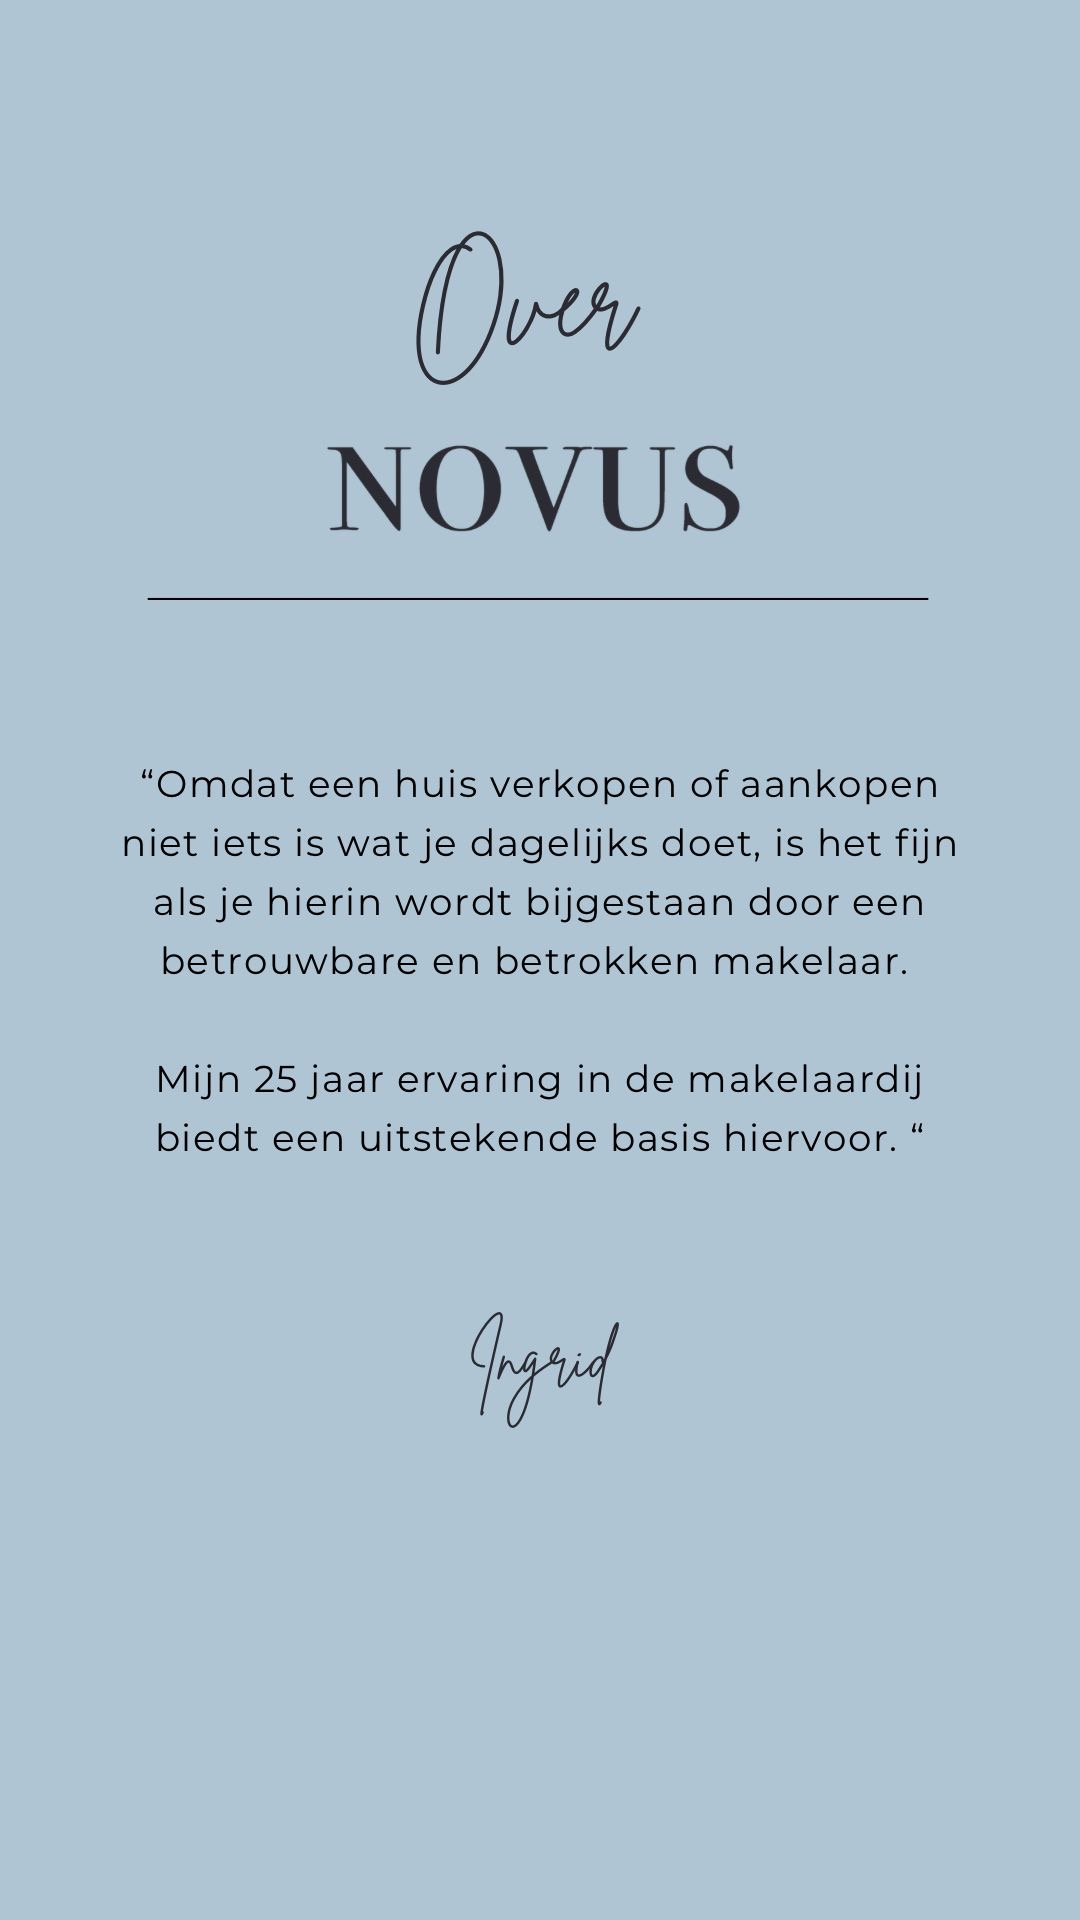 Over Novus